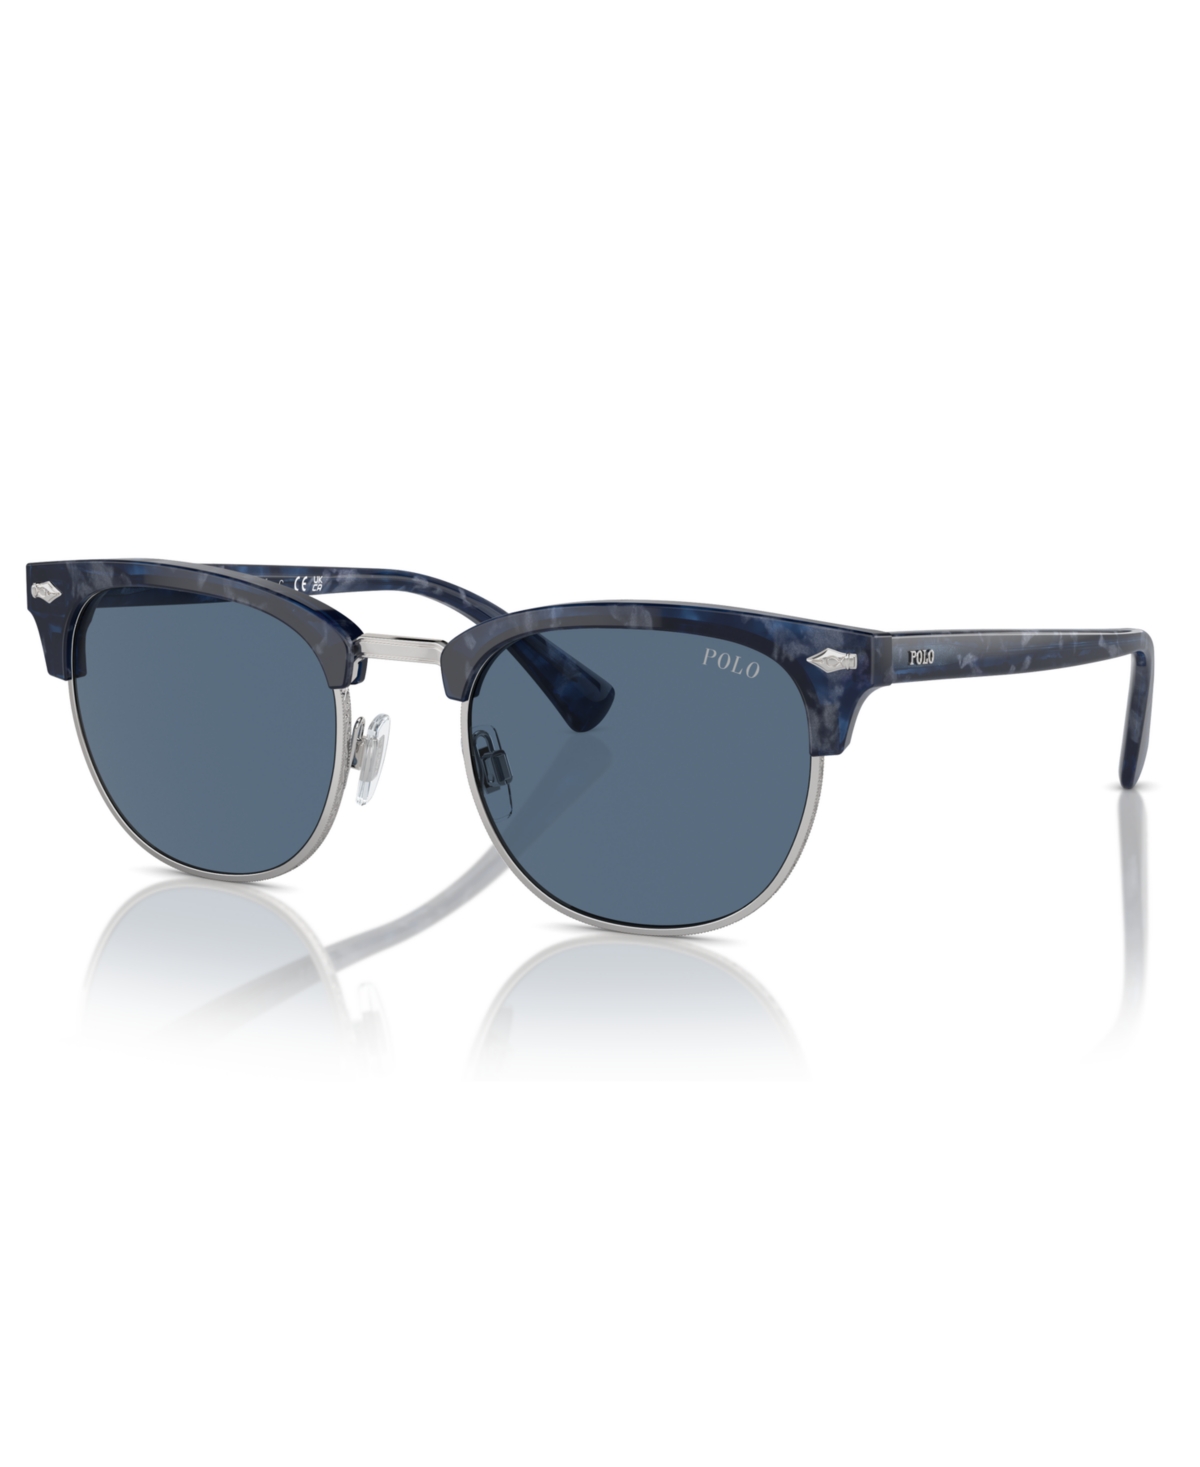 Polo Ralph Lauren Men's Sunglasses, Ph4217 In Shiny Blue Havana